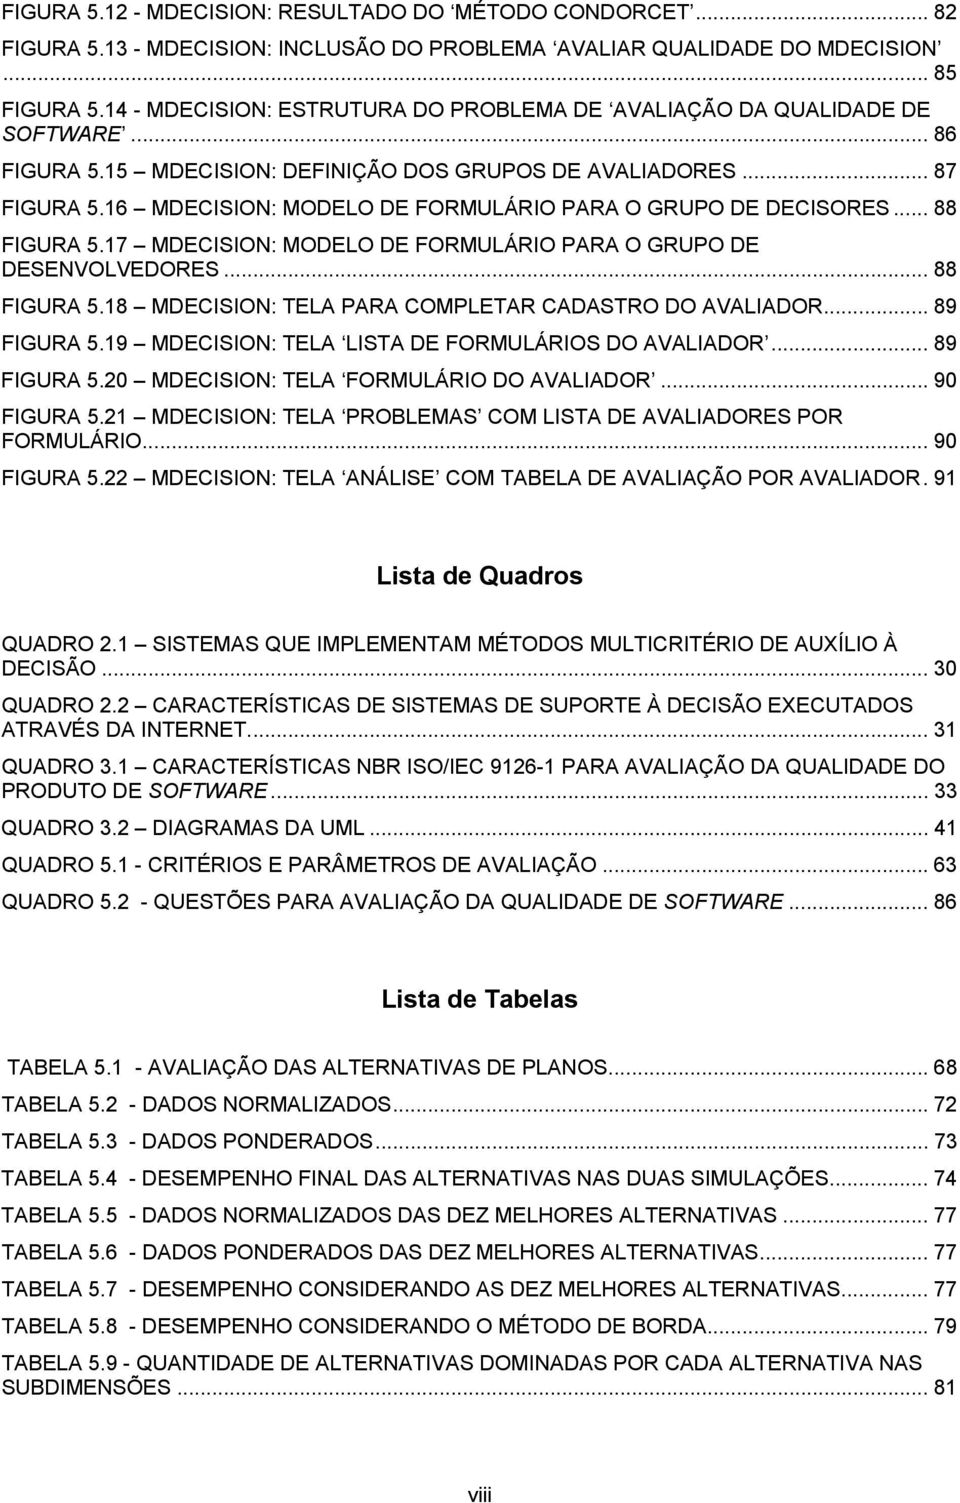 16 MDECISION: MODELO DE FORMULÁRIO PARA O GRUPO DE DECISORES... 88 FIGURA 5.17 MDECISION: MODELO DE FORMULÁRIO PARA O GRUPO DE DESENVOLVEDORES... 88 FIGURA 5.18 MDECISION: TELA PARA COMPLETAR CADASTRO DO AVALIADOR.